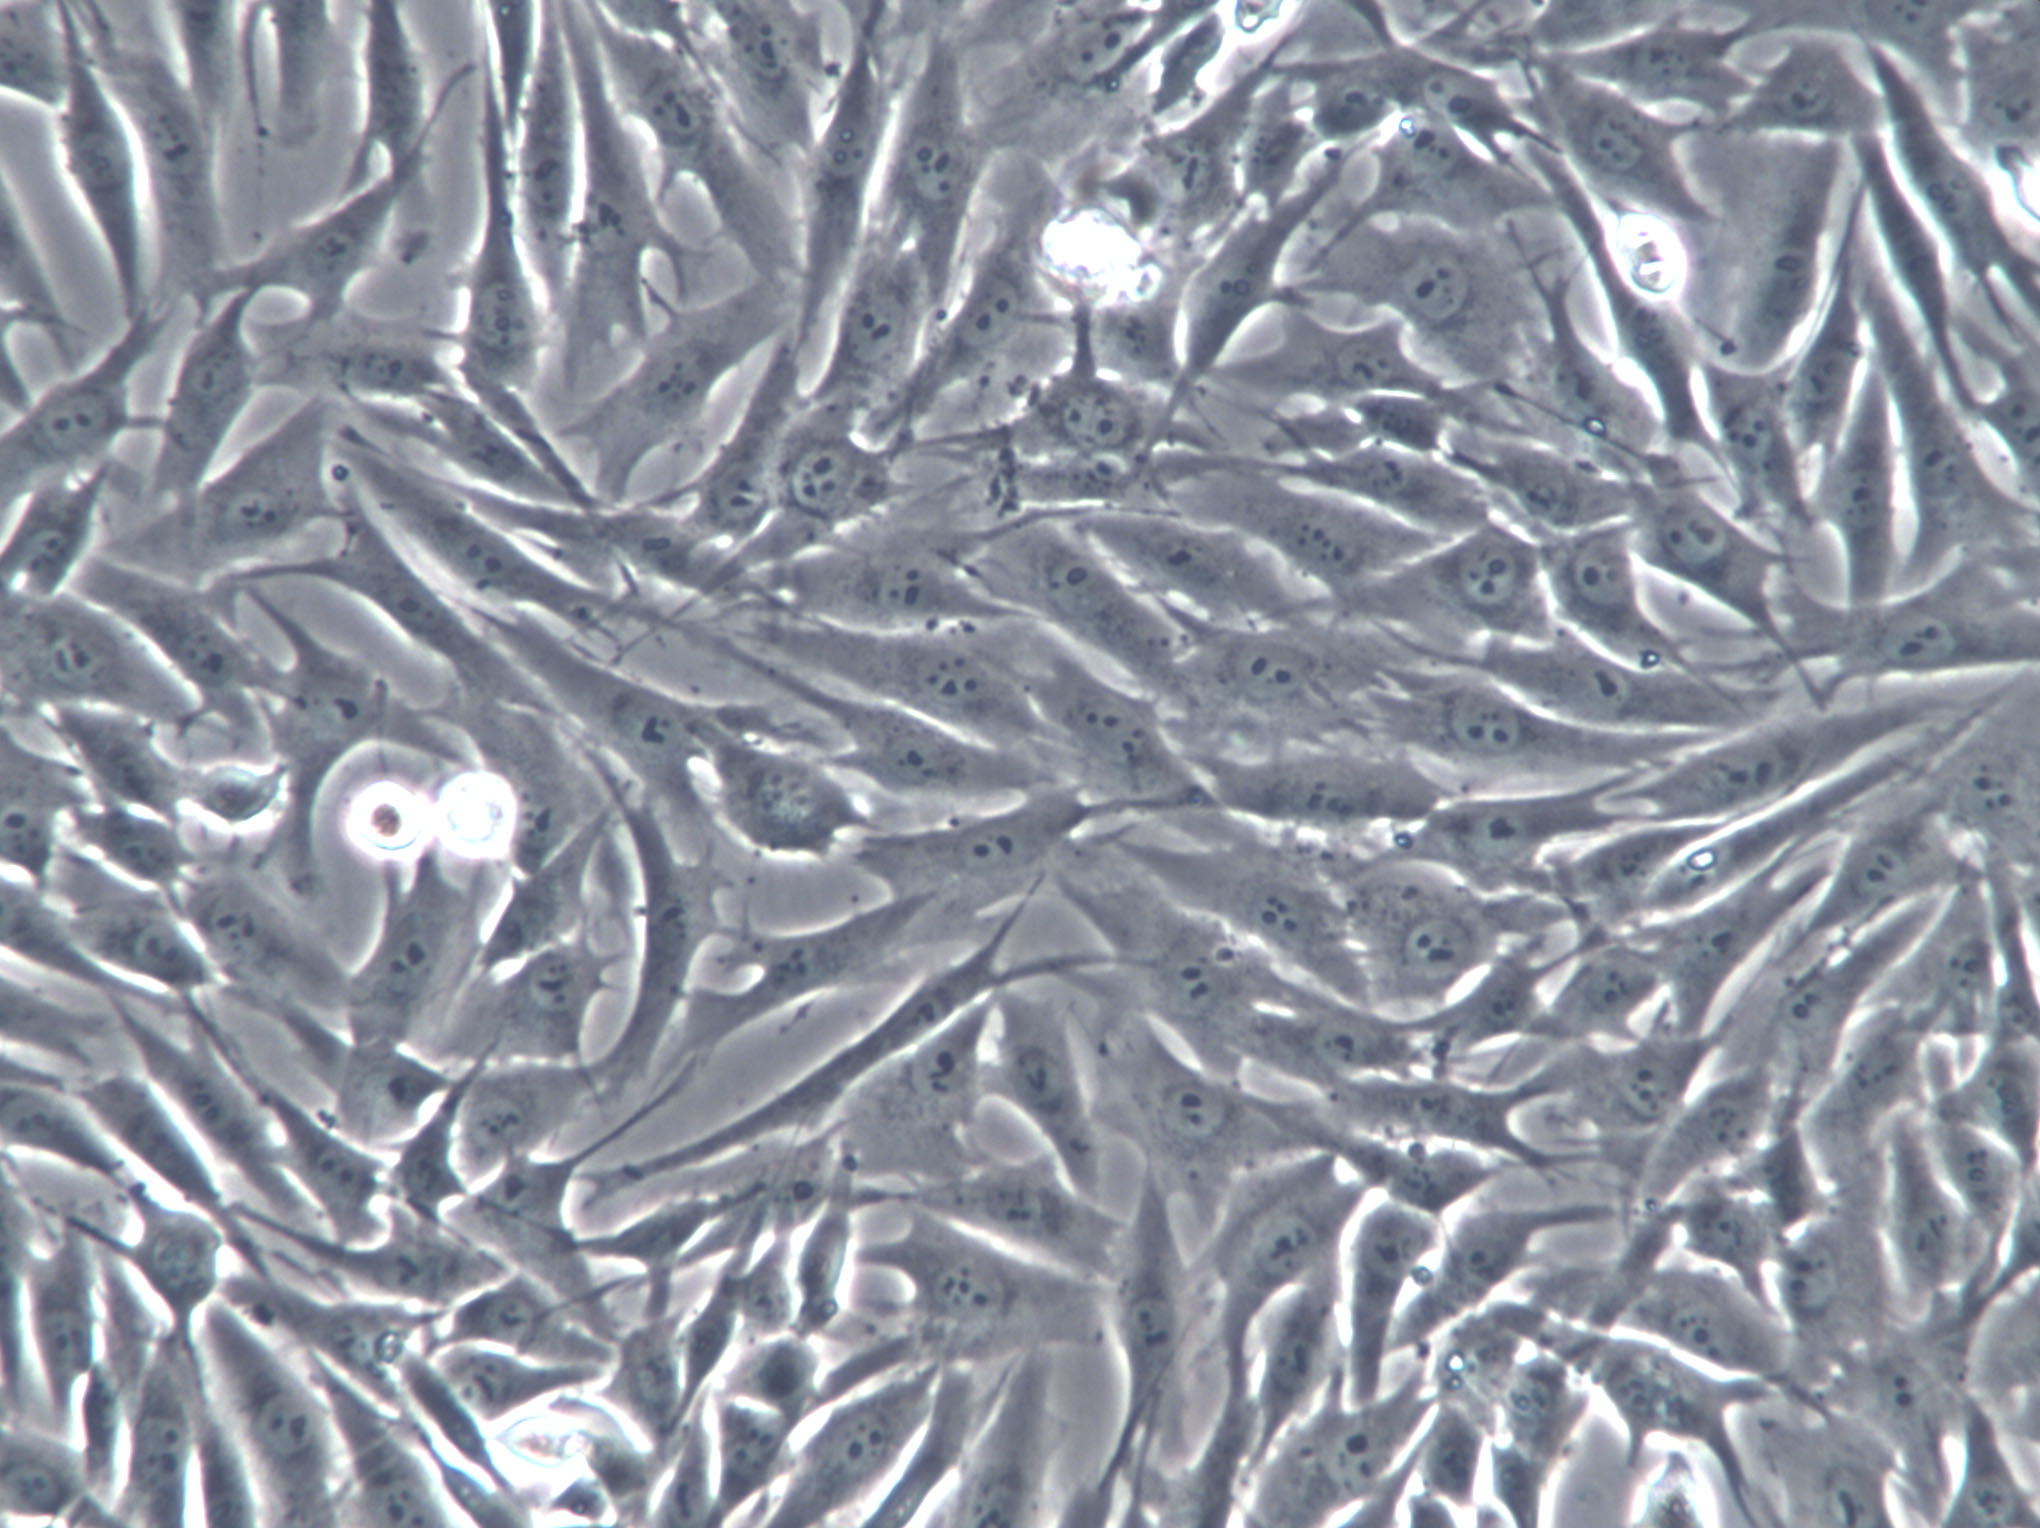 MEC-1 Cell|人粘液表皮样癌细胞,MEC-1 Cell